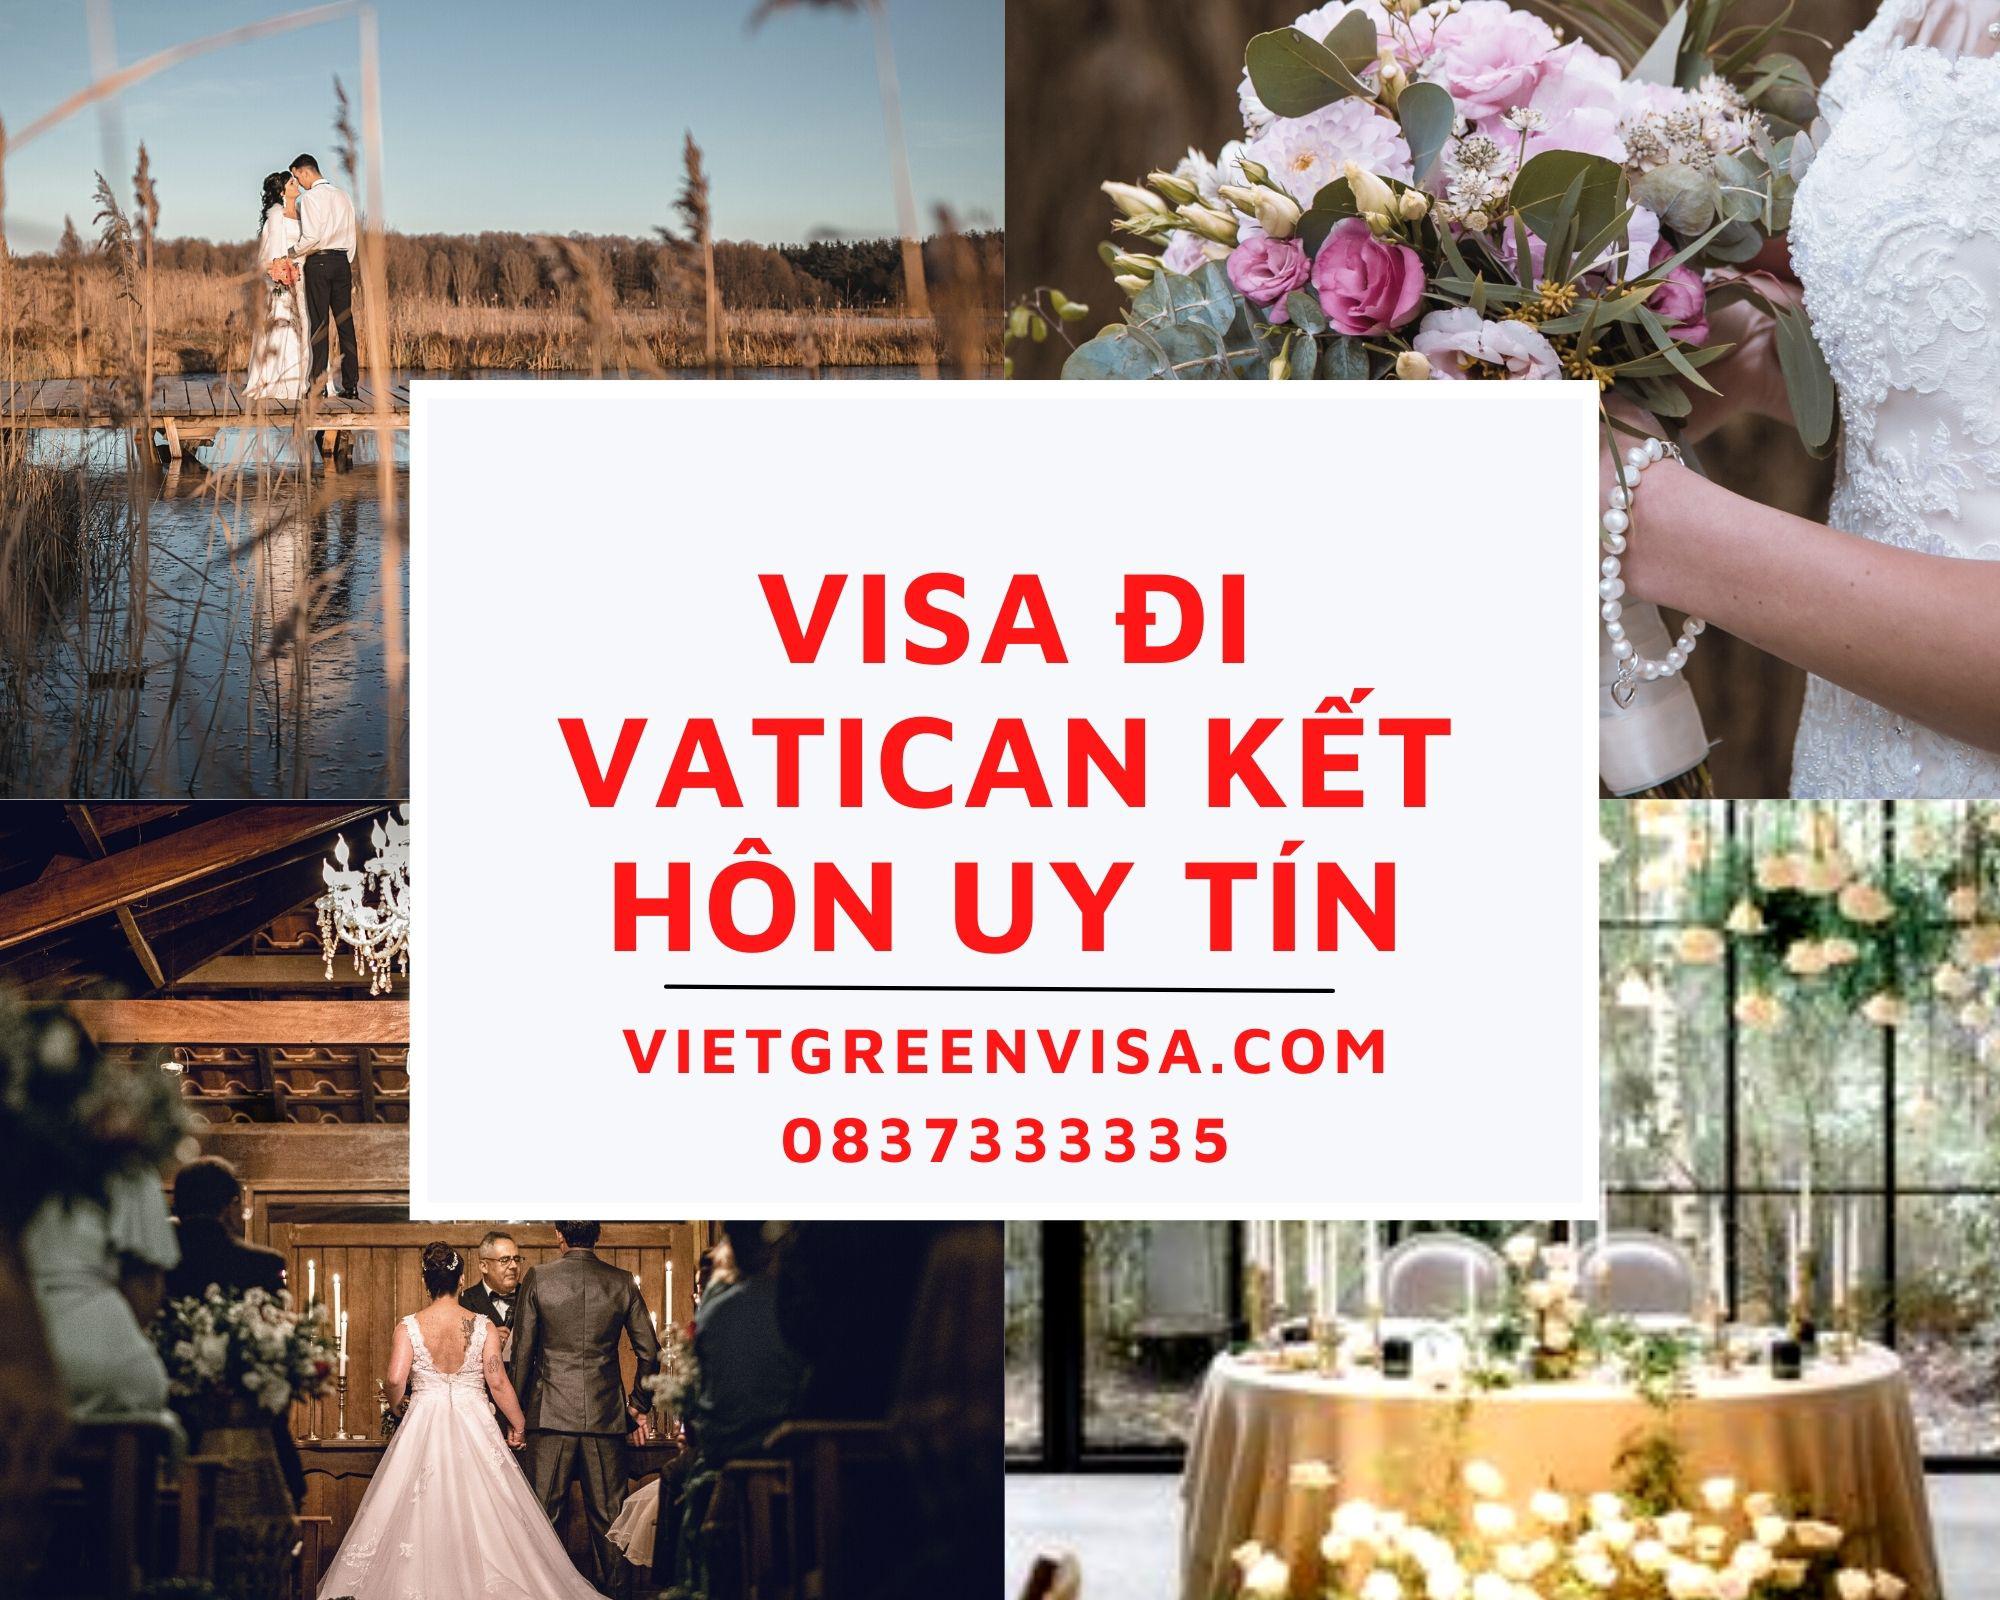 Làm visa đi Vatican kết hôn nhanh chóng, uy tín